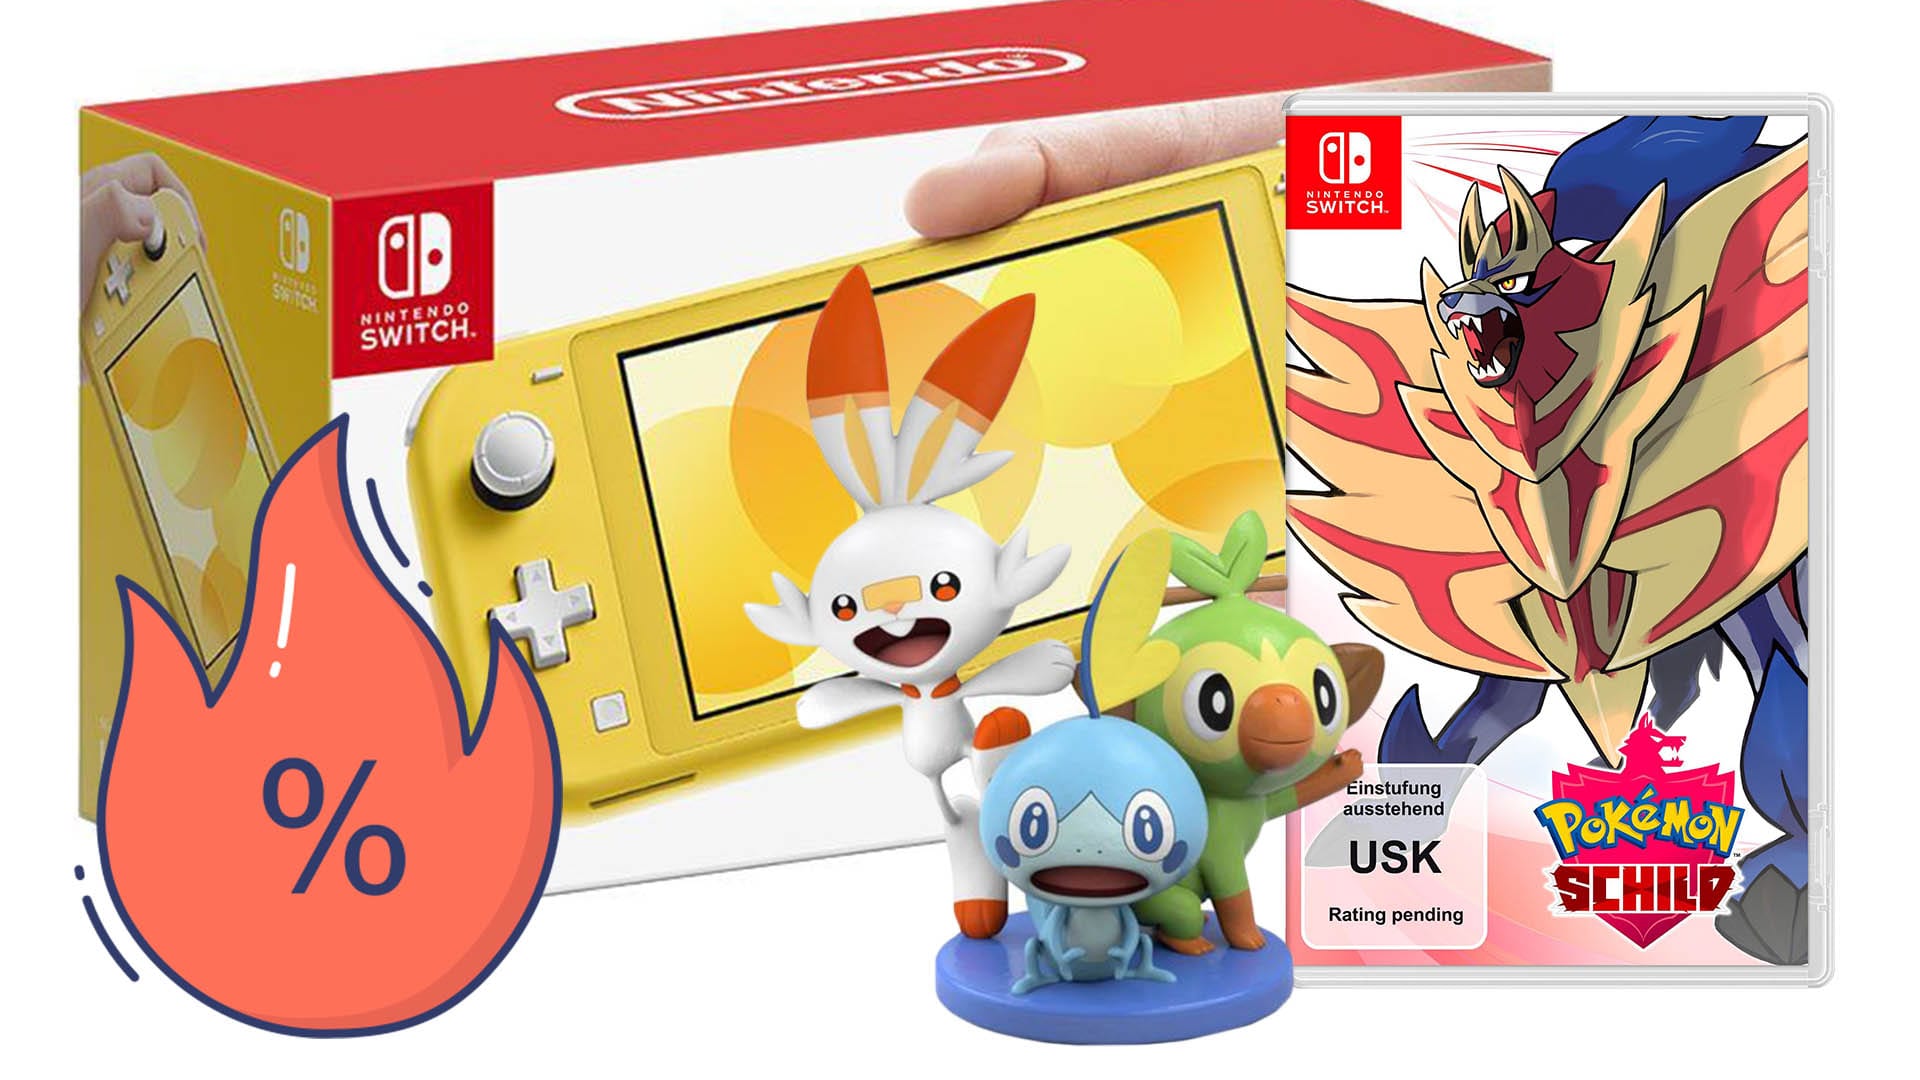 Nintendo Switch Lite und Pokémon Schild für günstige 229 Euro, jetzt sparen  bei Otto!